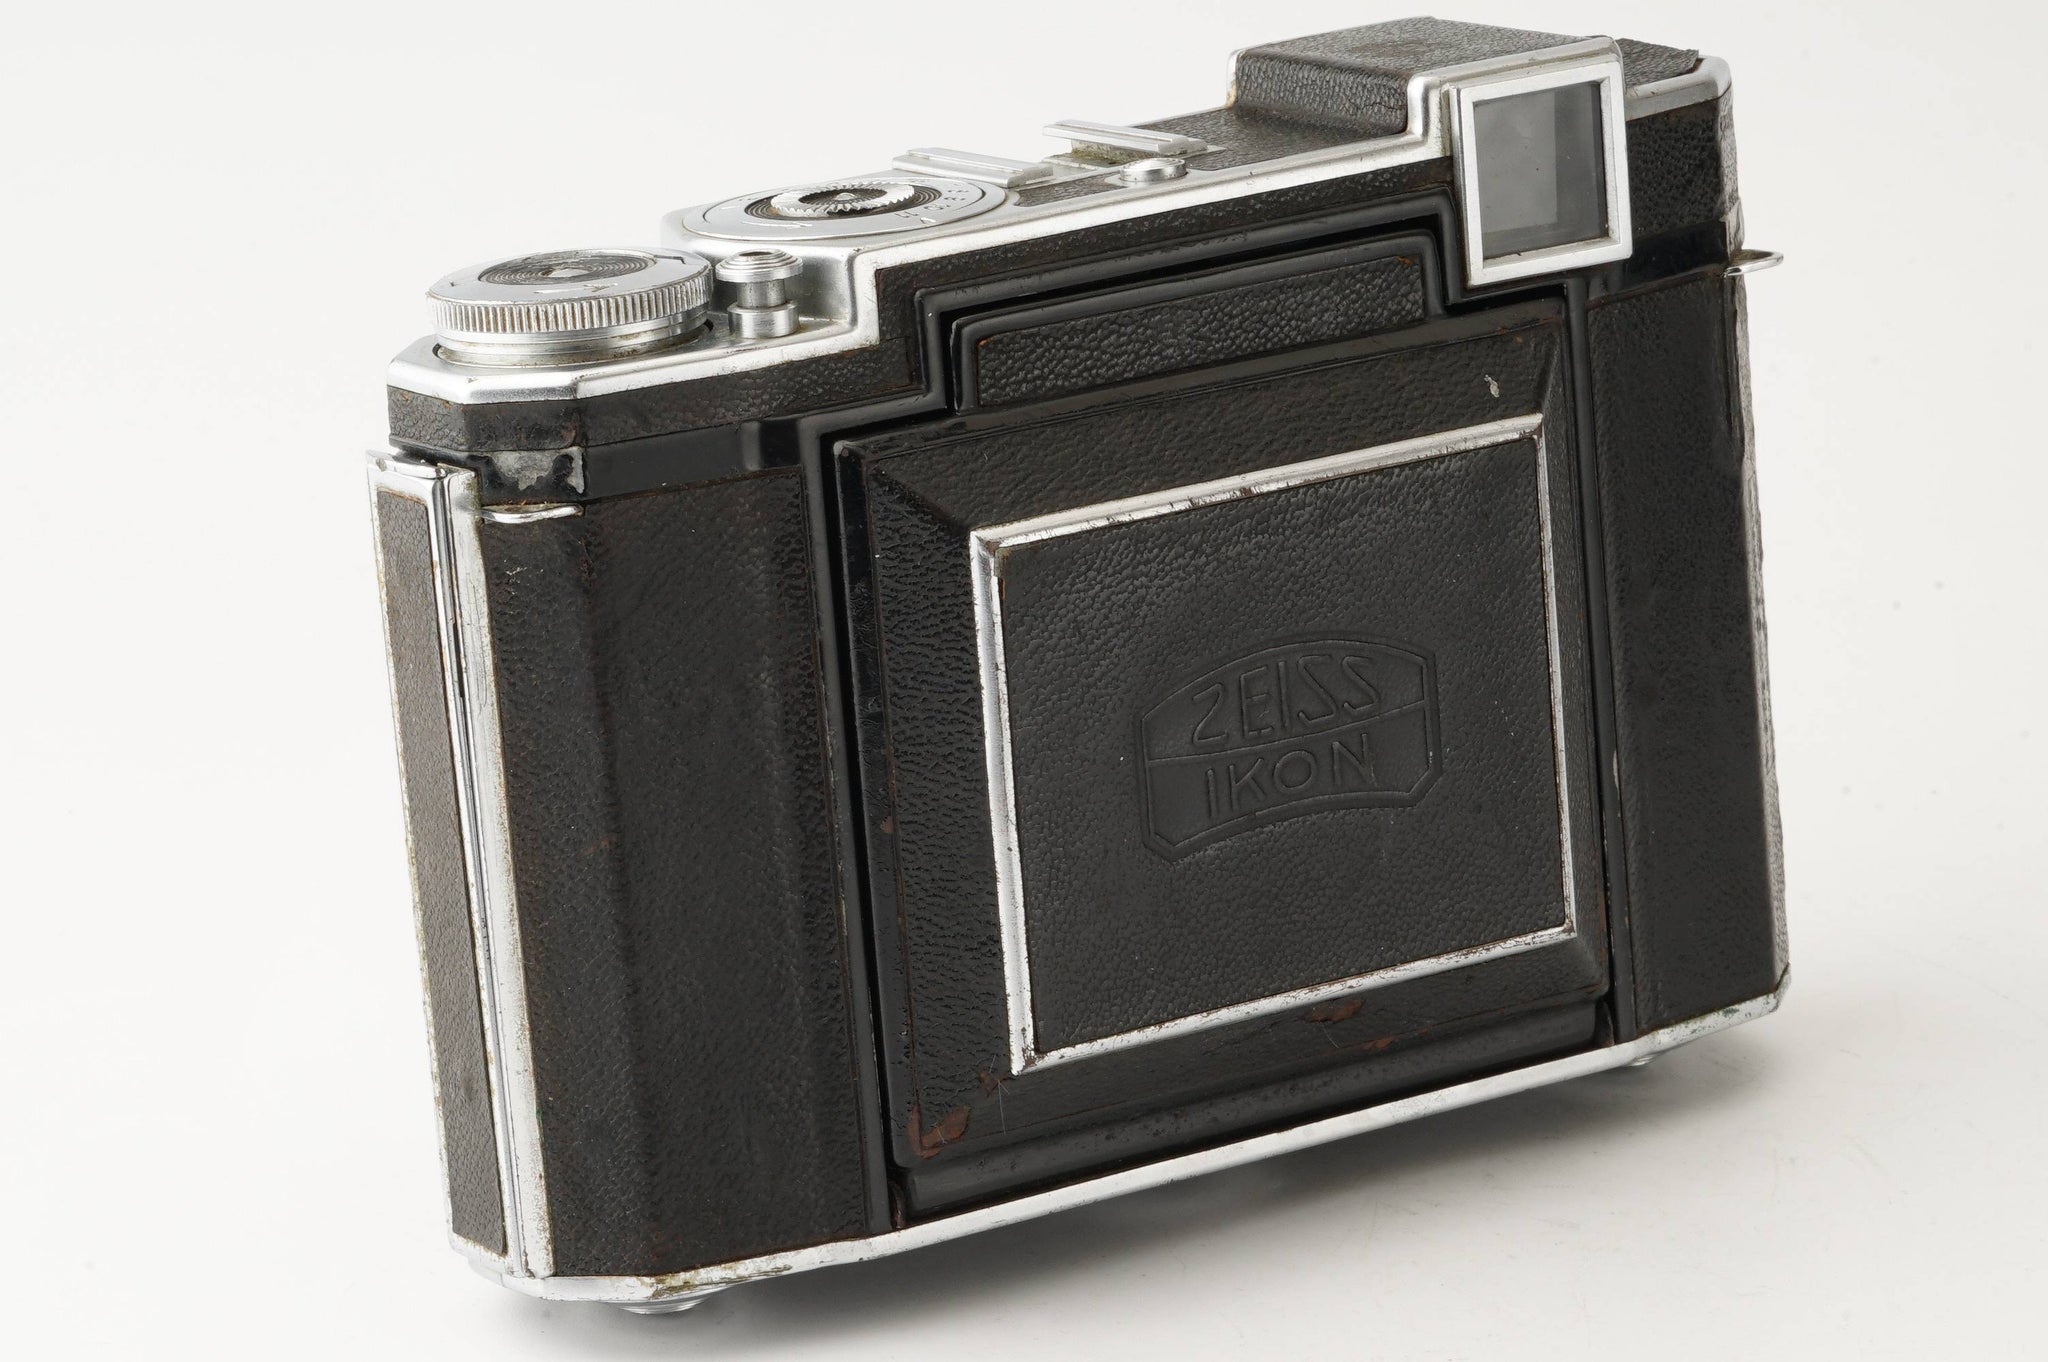 スーパーイコンタ 中判カメラ 80mm F2.8 ツァイスイコン フィルムカメラ - フィルムカメラ